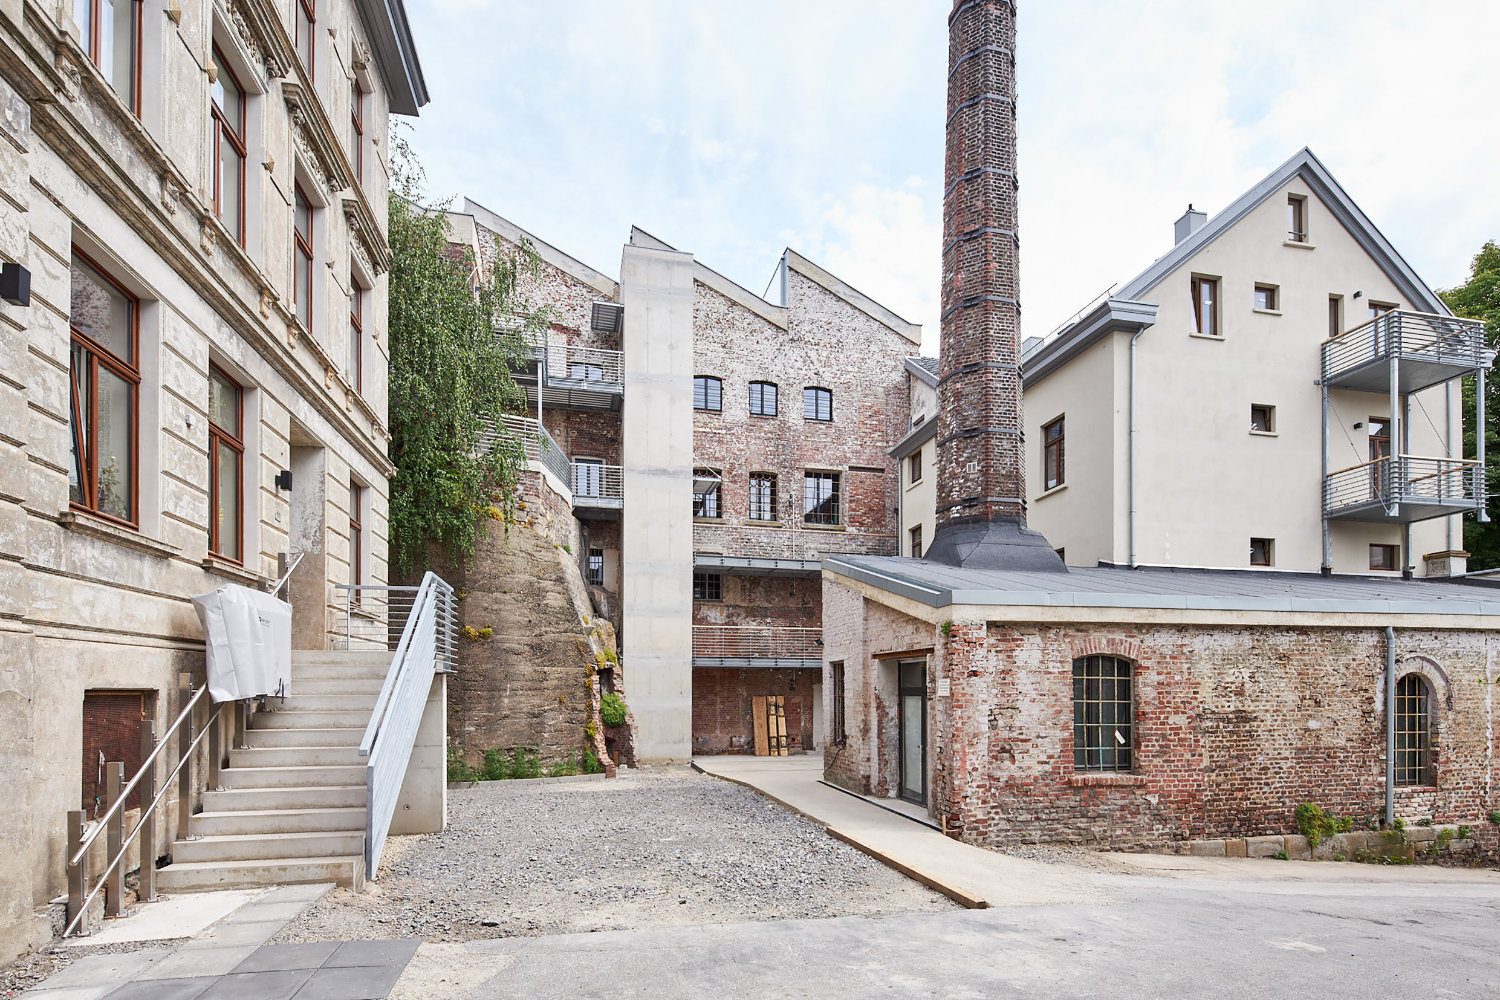 Innenhof mit alter Fabrik und Schornstein